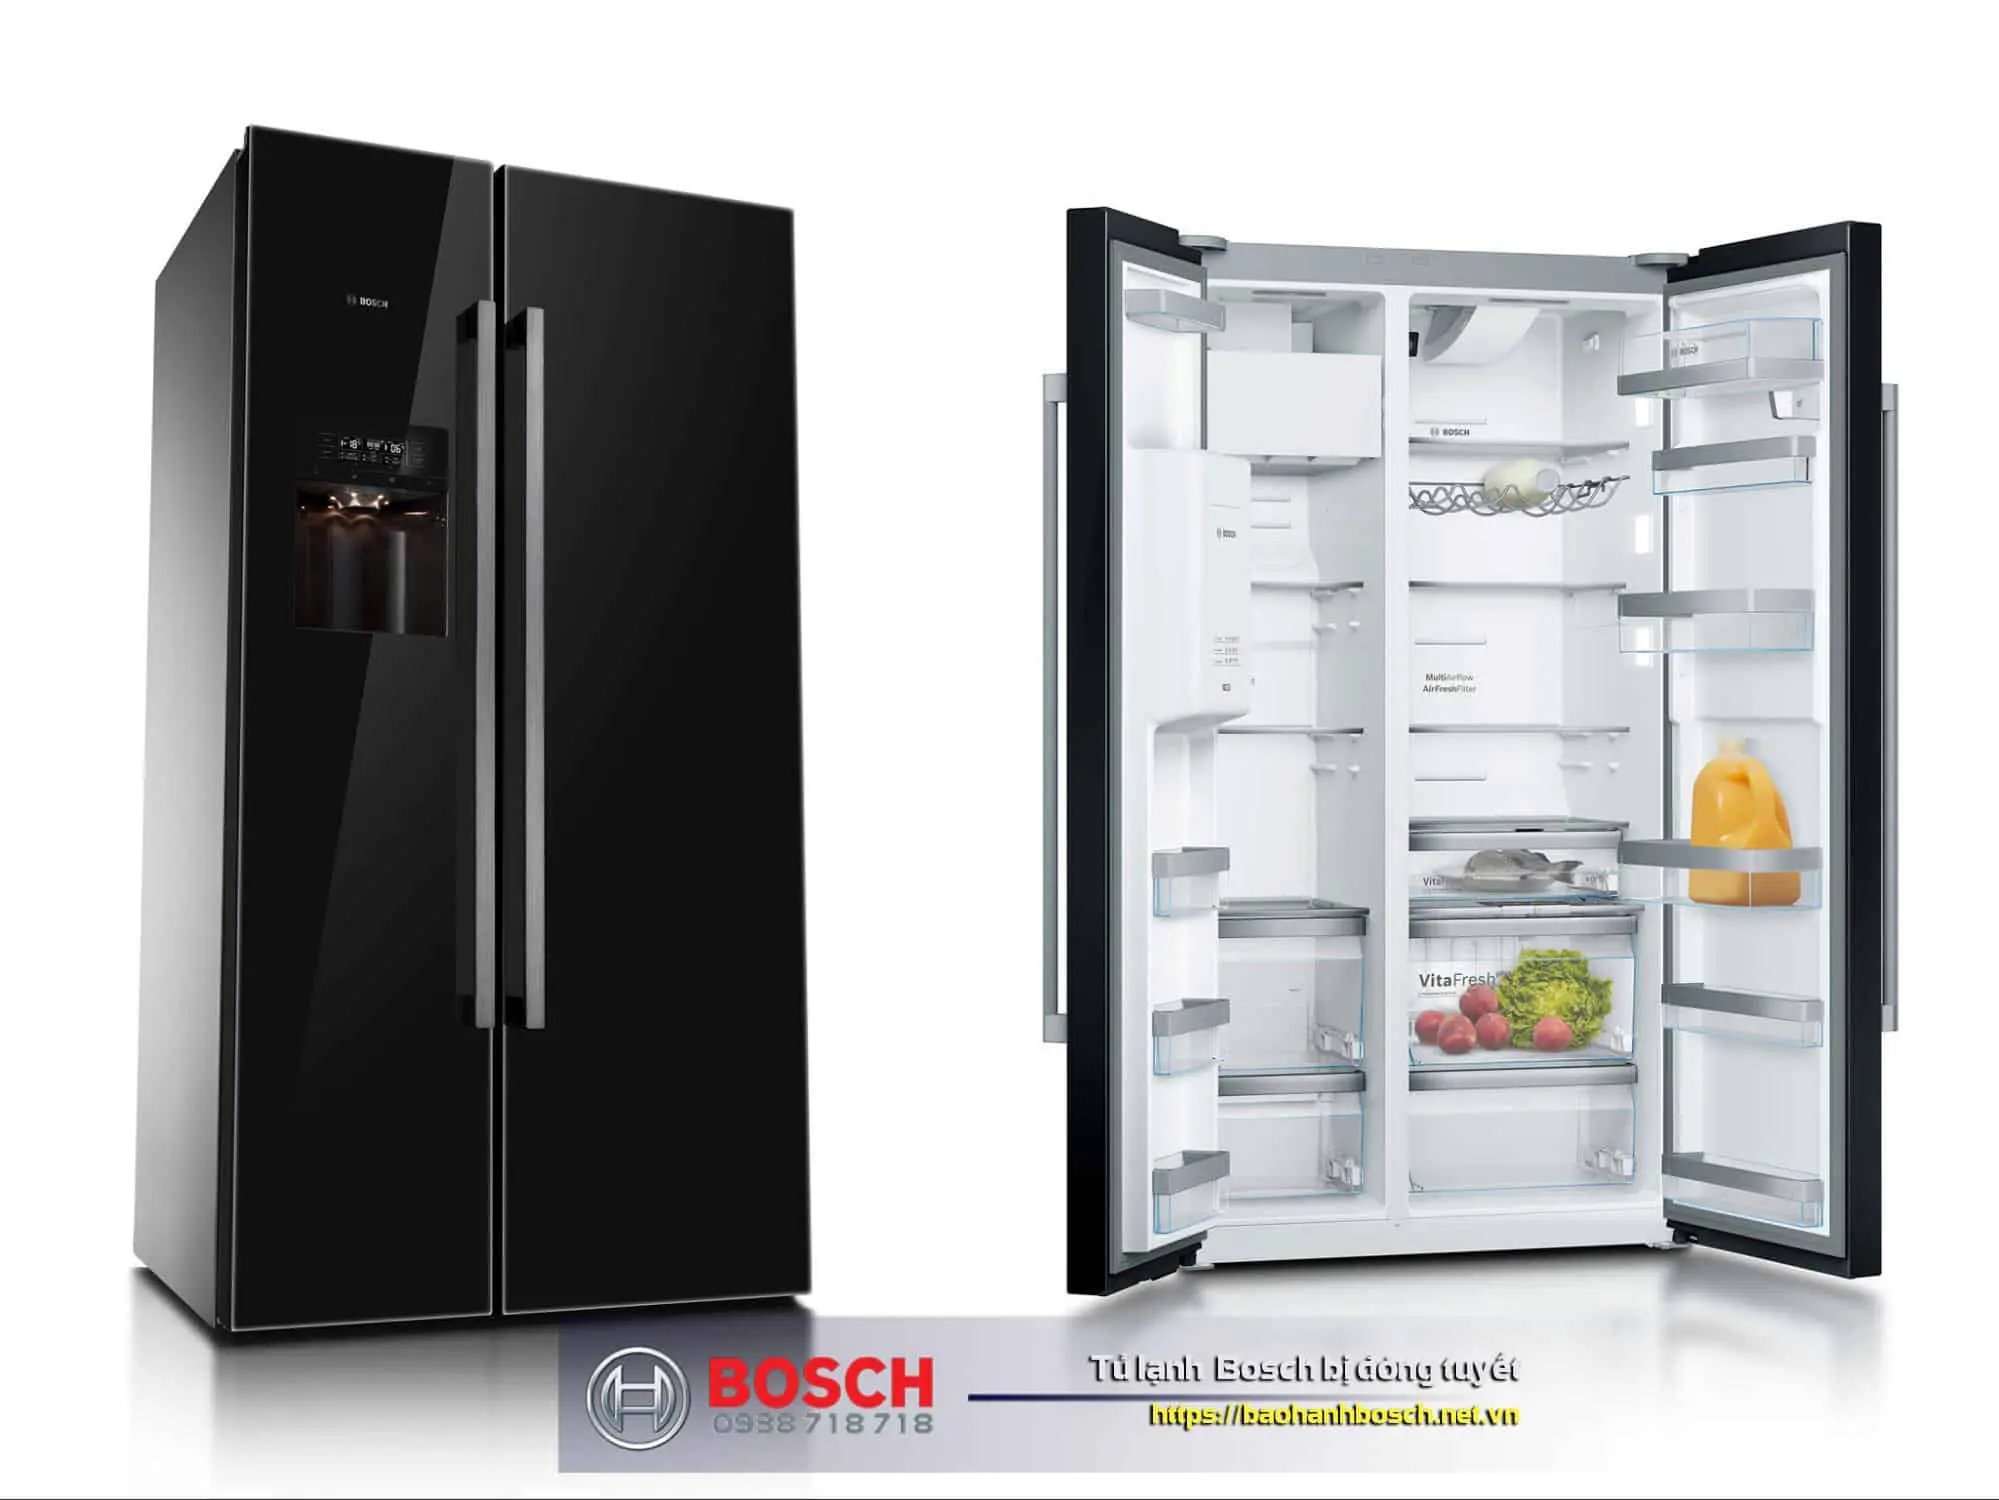 Tủ lạnh Bosch bị đóng tuyết có thể do hệ thống xả tuyết gặp trục trặc